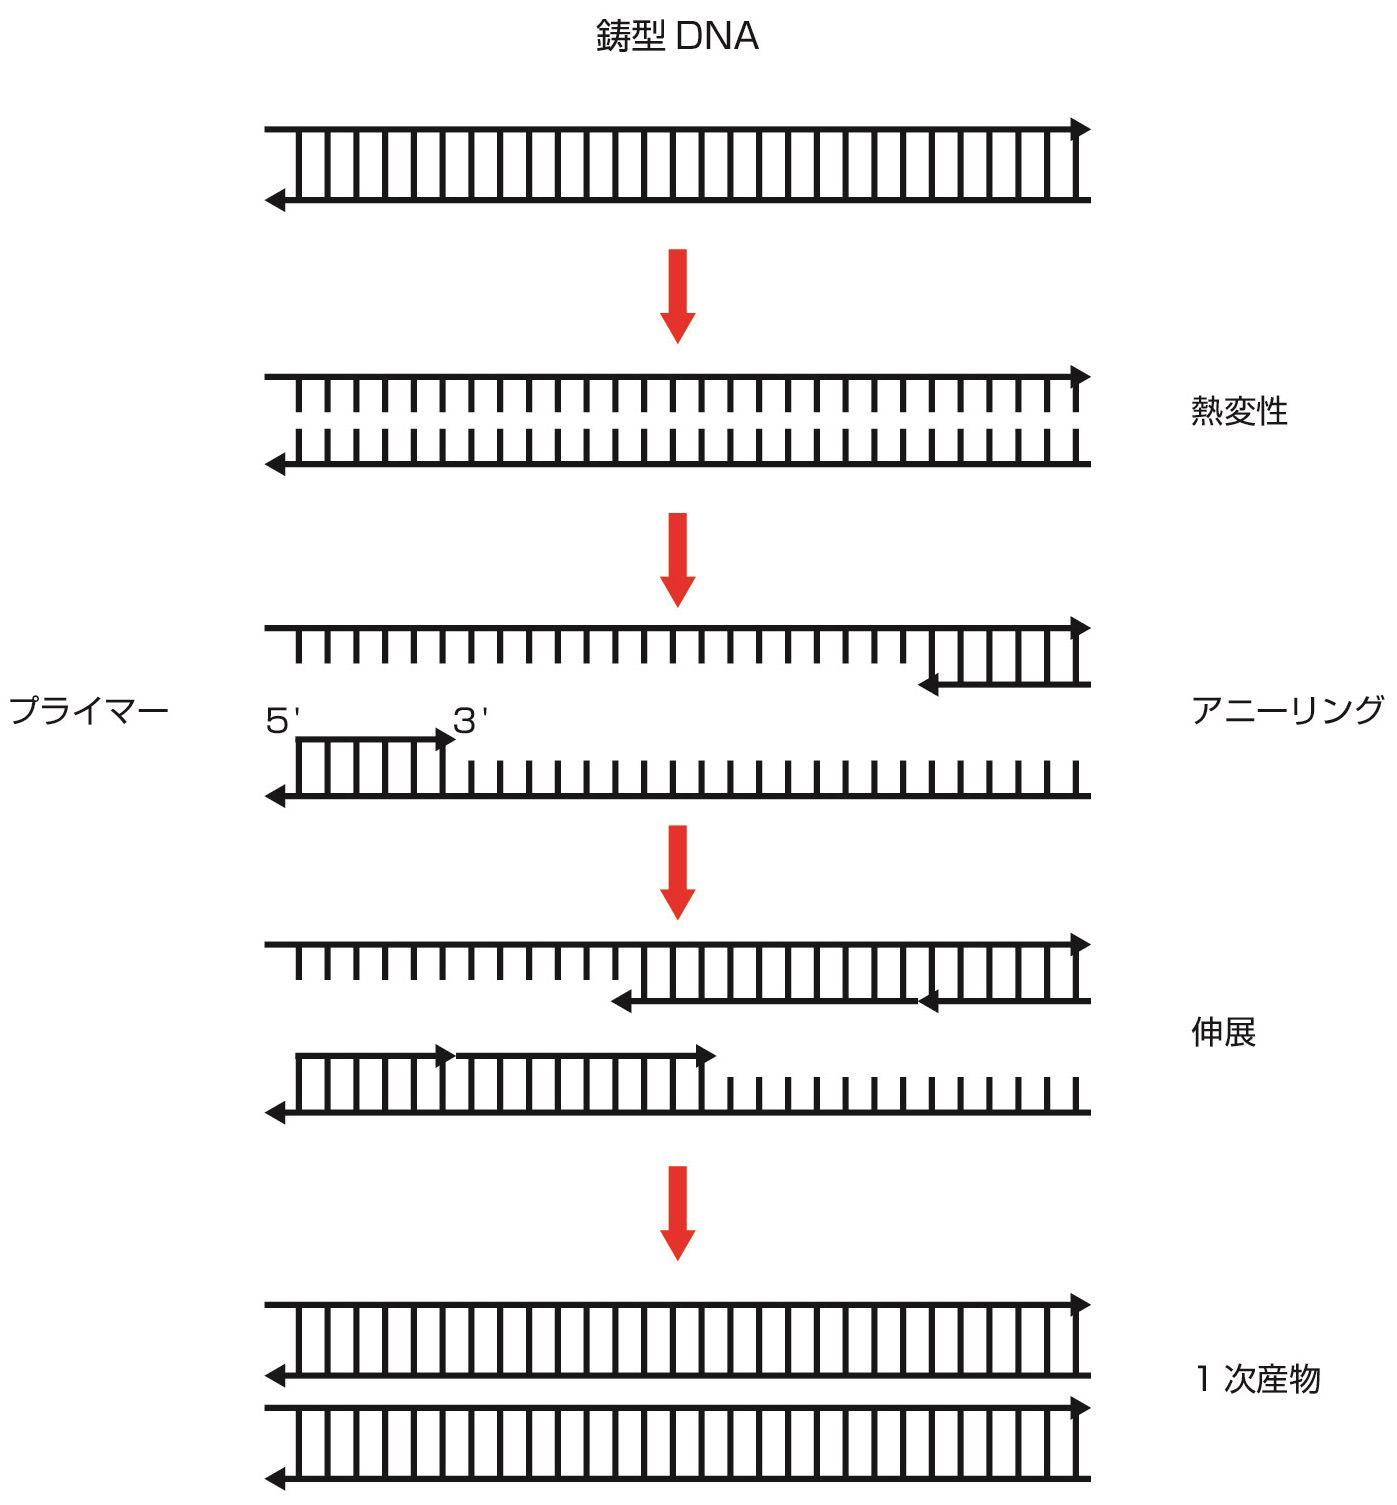 ⓔ図17-5-6　PCRの原理 (谷脇雅史：内科学第11版 (矢﨑義雄総編集)，朝倉書店，2017; 1888–1890) 鋳型DNAを熱変性し，アニーリング反応，伸展反応によってPCR産物が得られる．この反応を繰り返すことによって目的のDNA領域を増幅することができる．図は第1サイクルのみを示した．